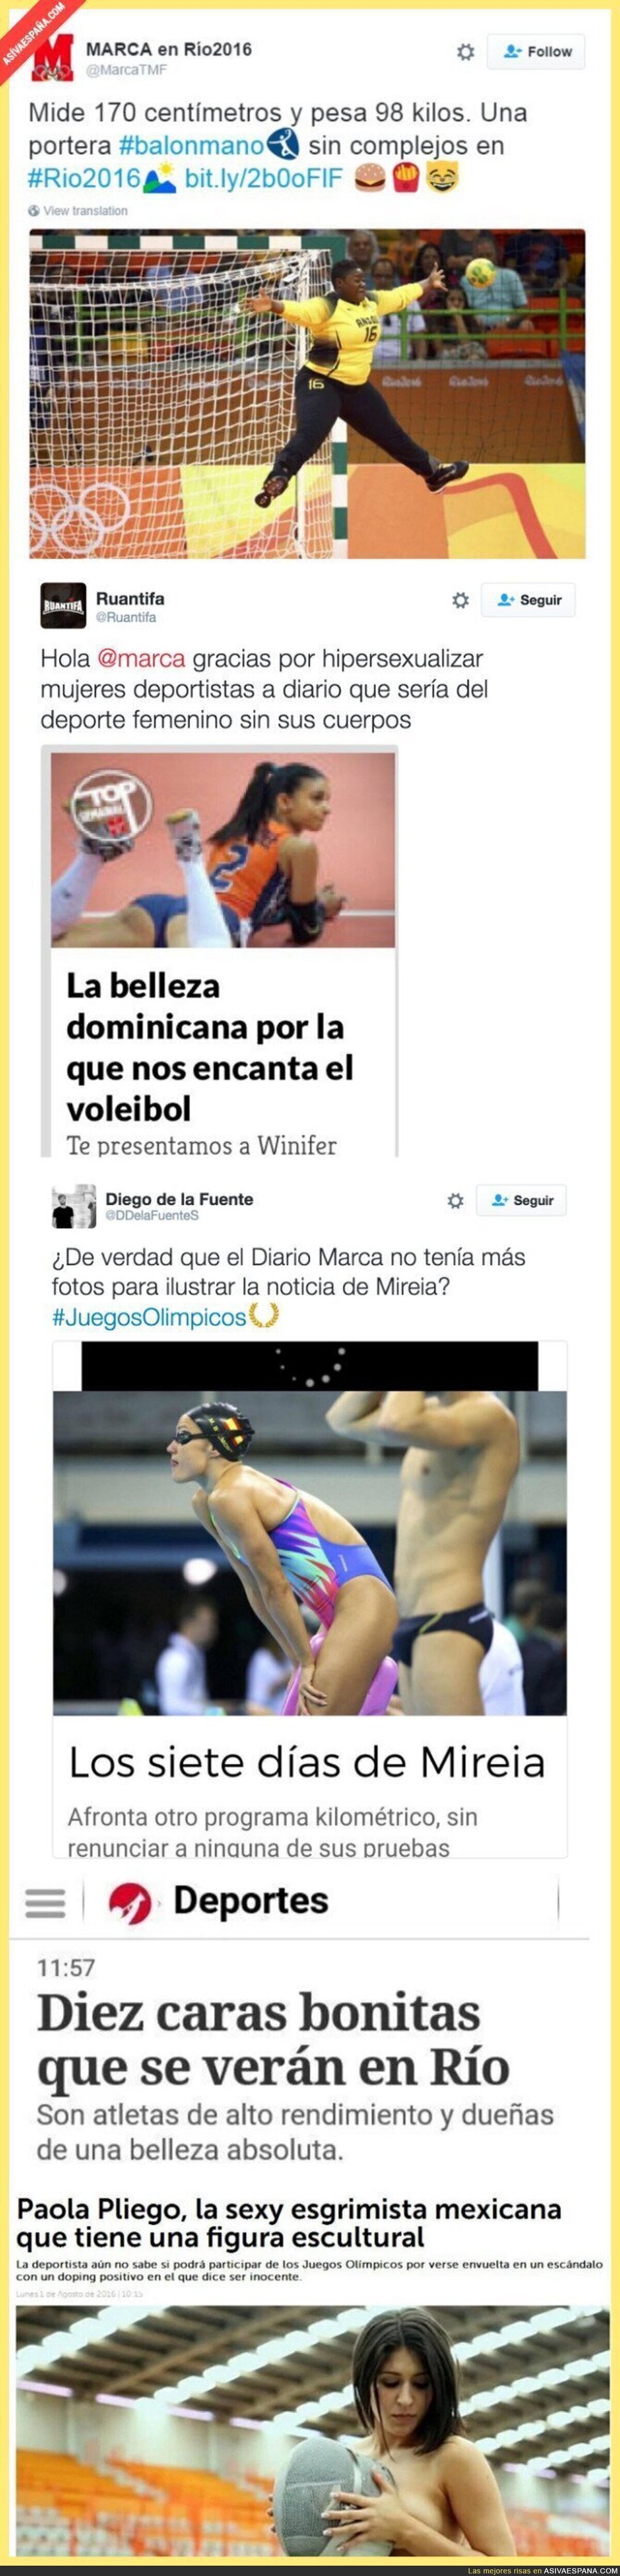 Los titulares de prensa más lamentables sobre mujeres en los JJOO de Río